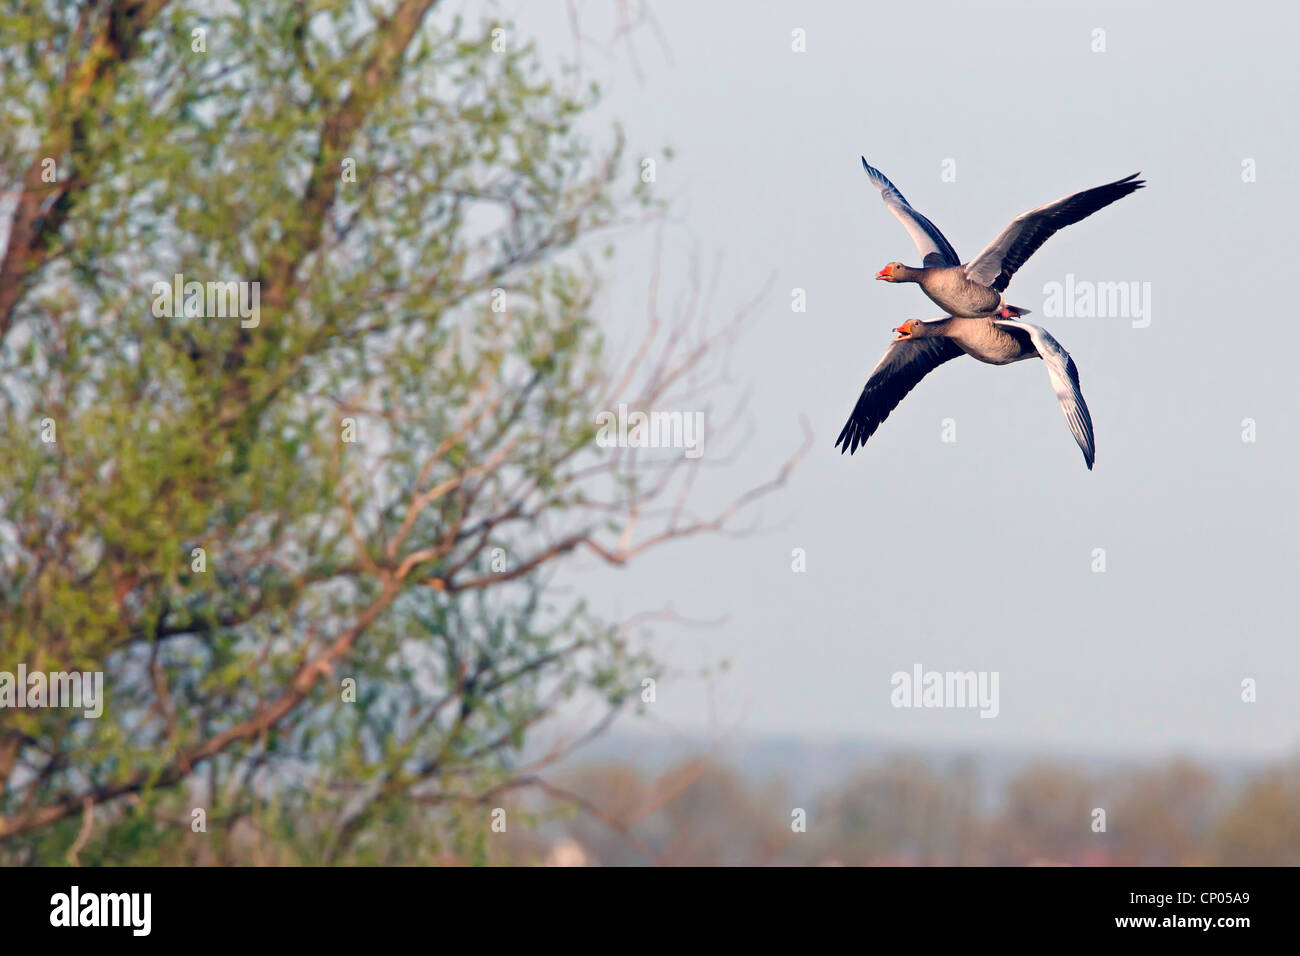 greylag goose (Anser anser), two Greylag geese flying calling, Germany, Rhineland-Palatinate Stock Photo